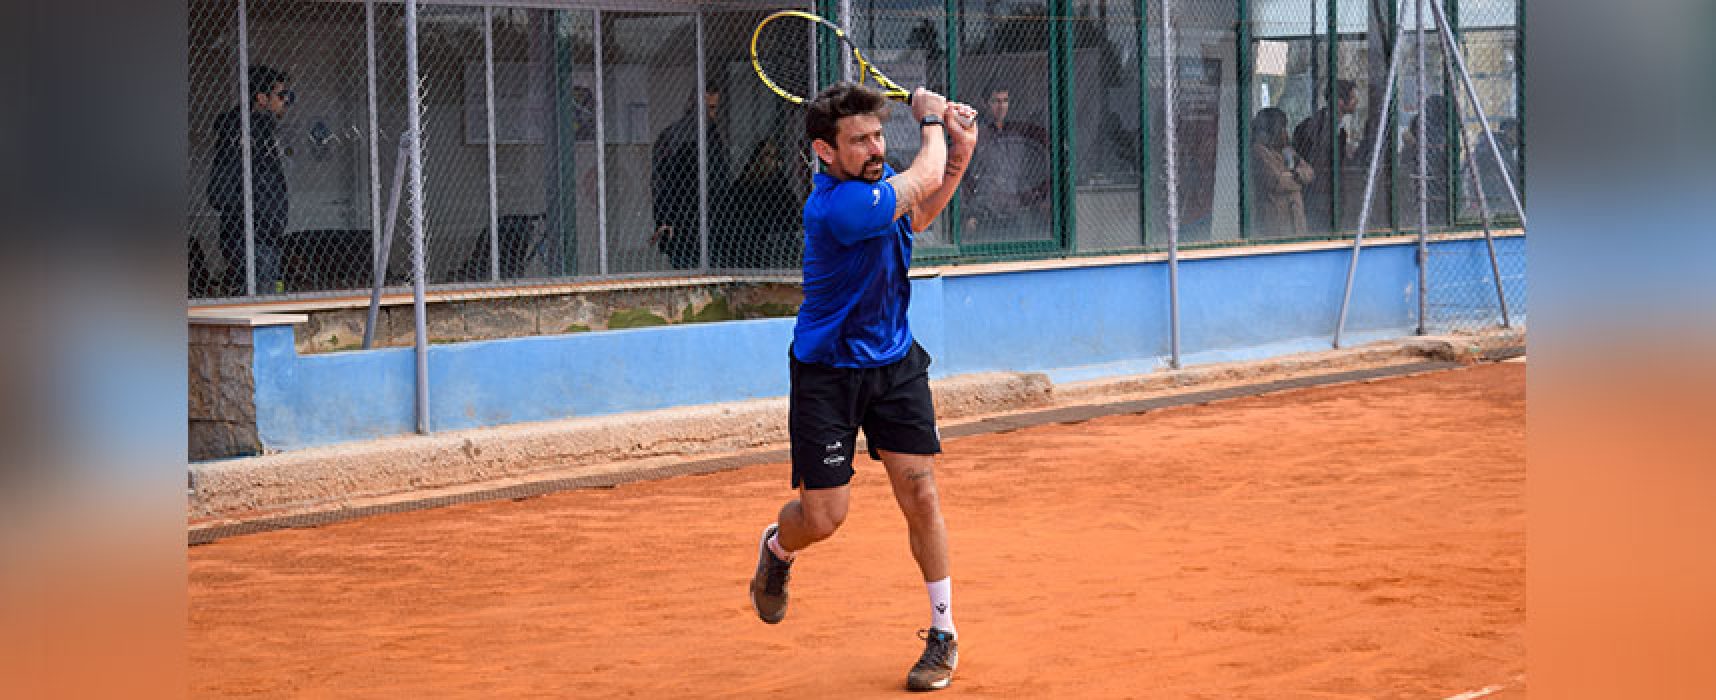 Pari all’esordio in B2 per lo Sporting Tennis Club Bisceglie, Sasso: “Partiti col piede giusto”